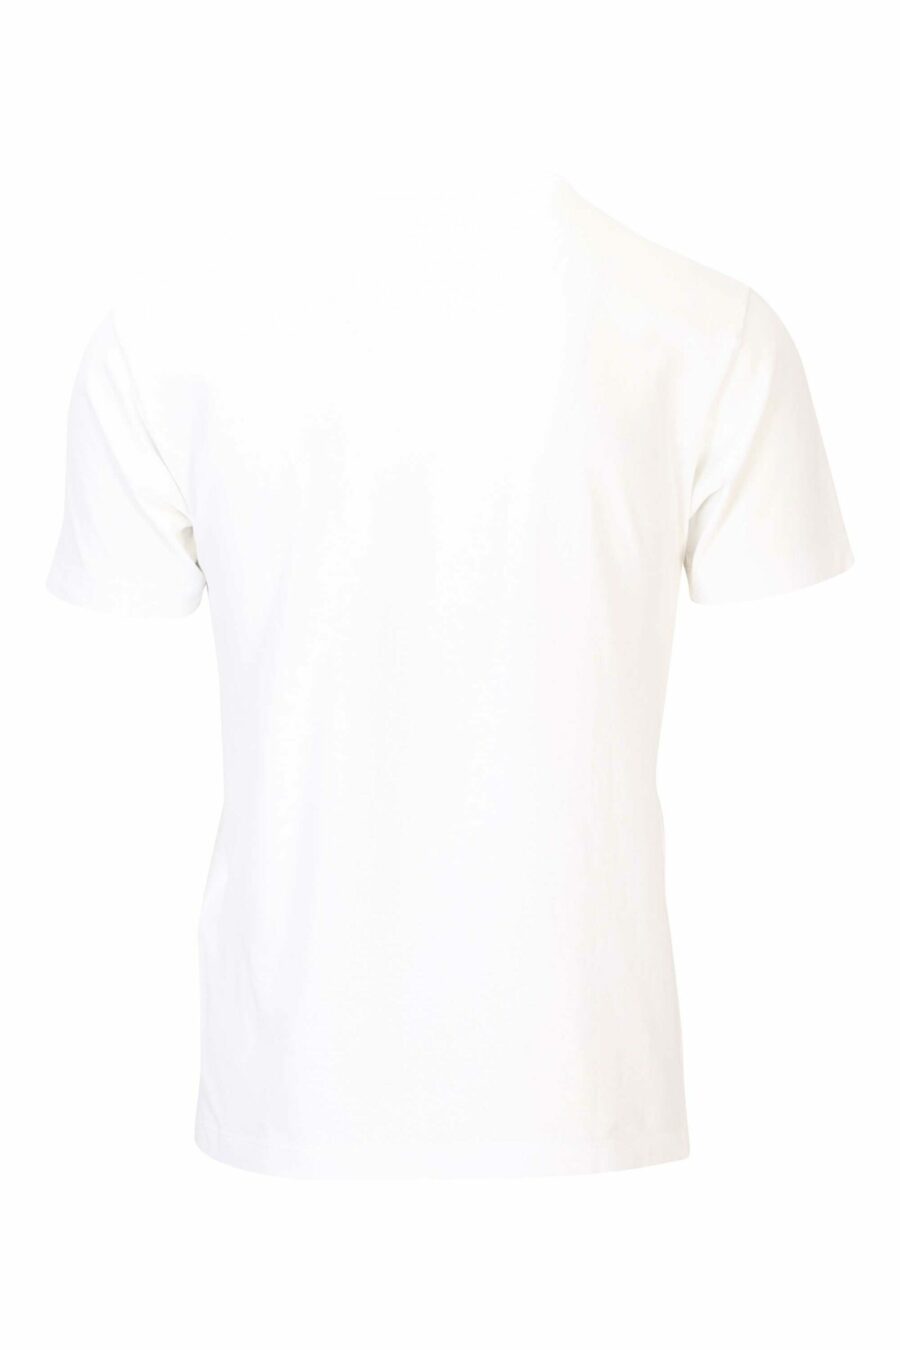 Weißes T-Shirt mit rundem Maxilogo auf der Vorderseite - 8052572742361 2 skaliert